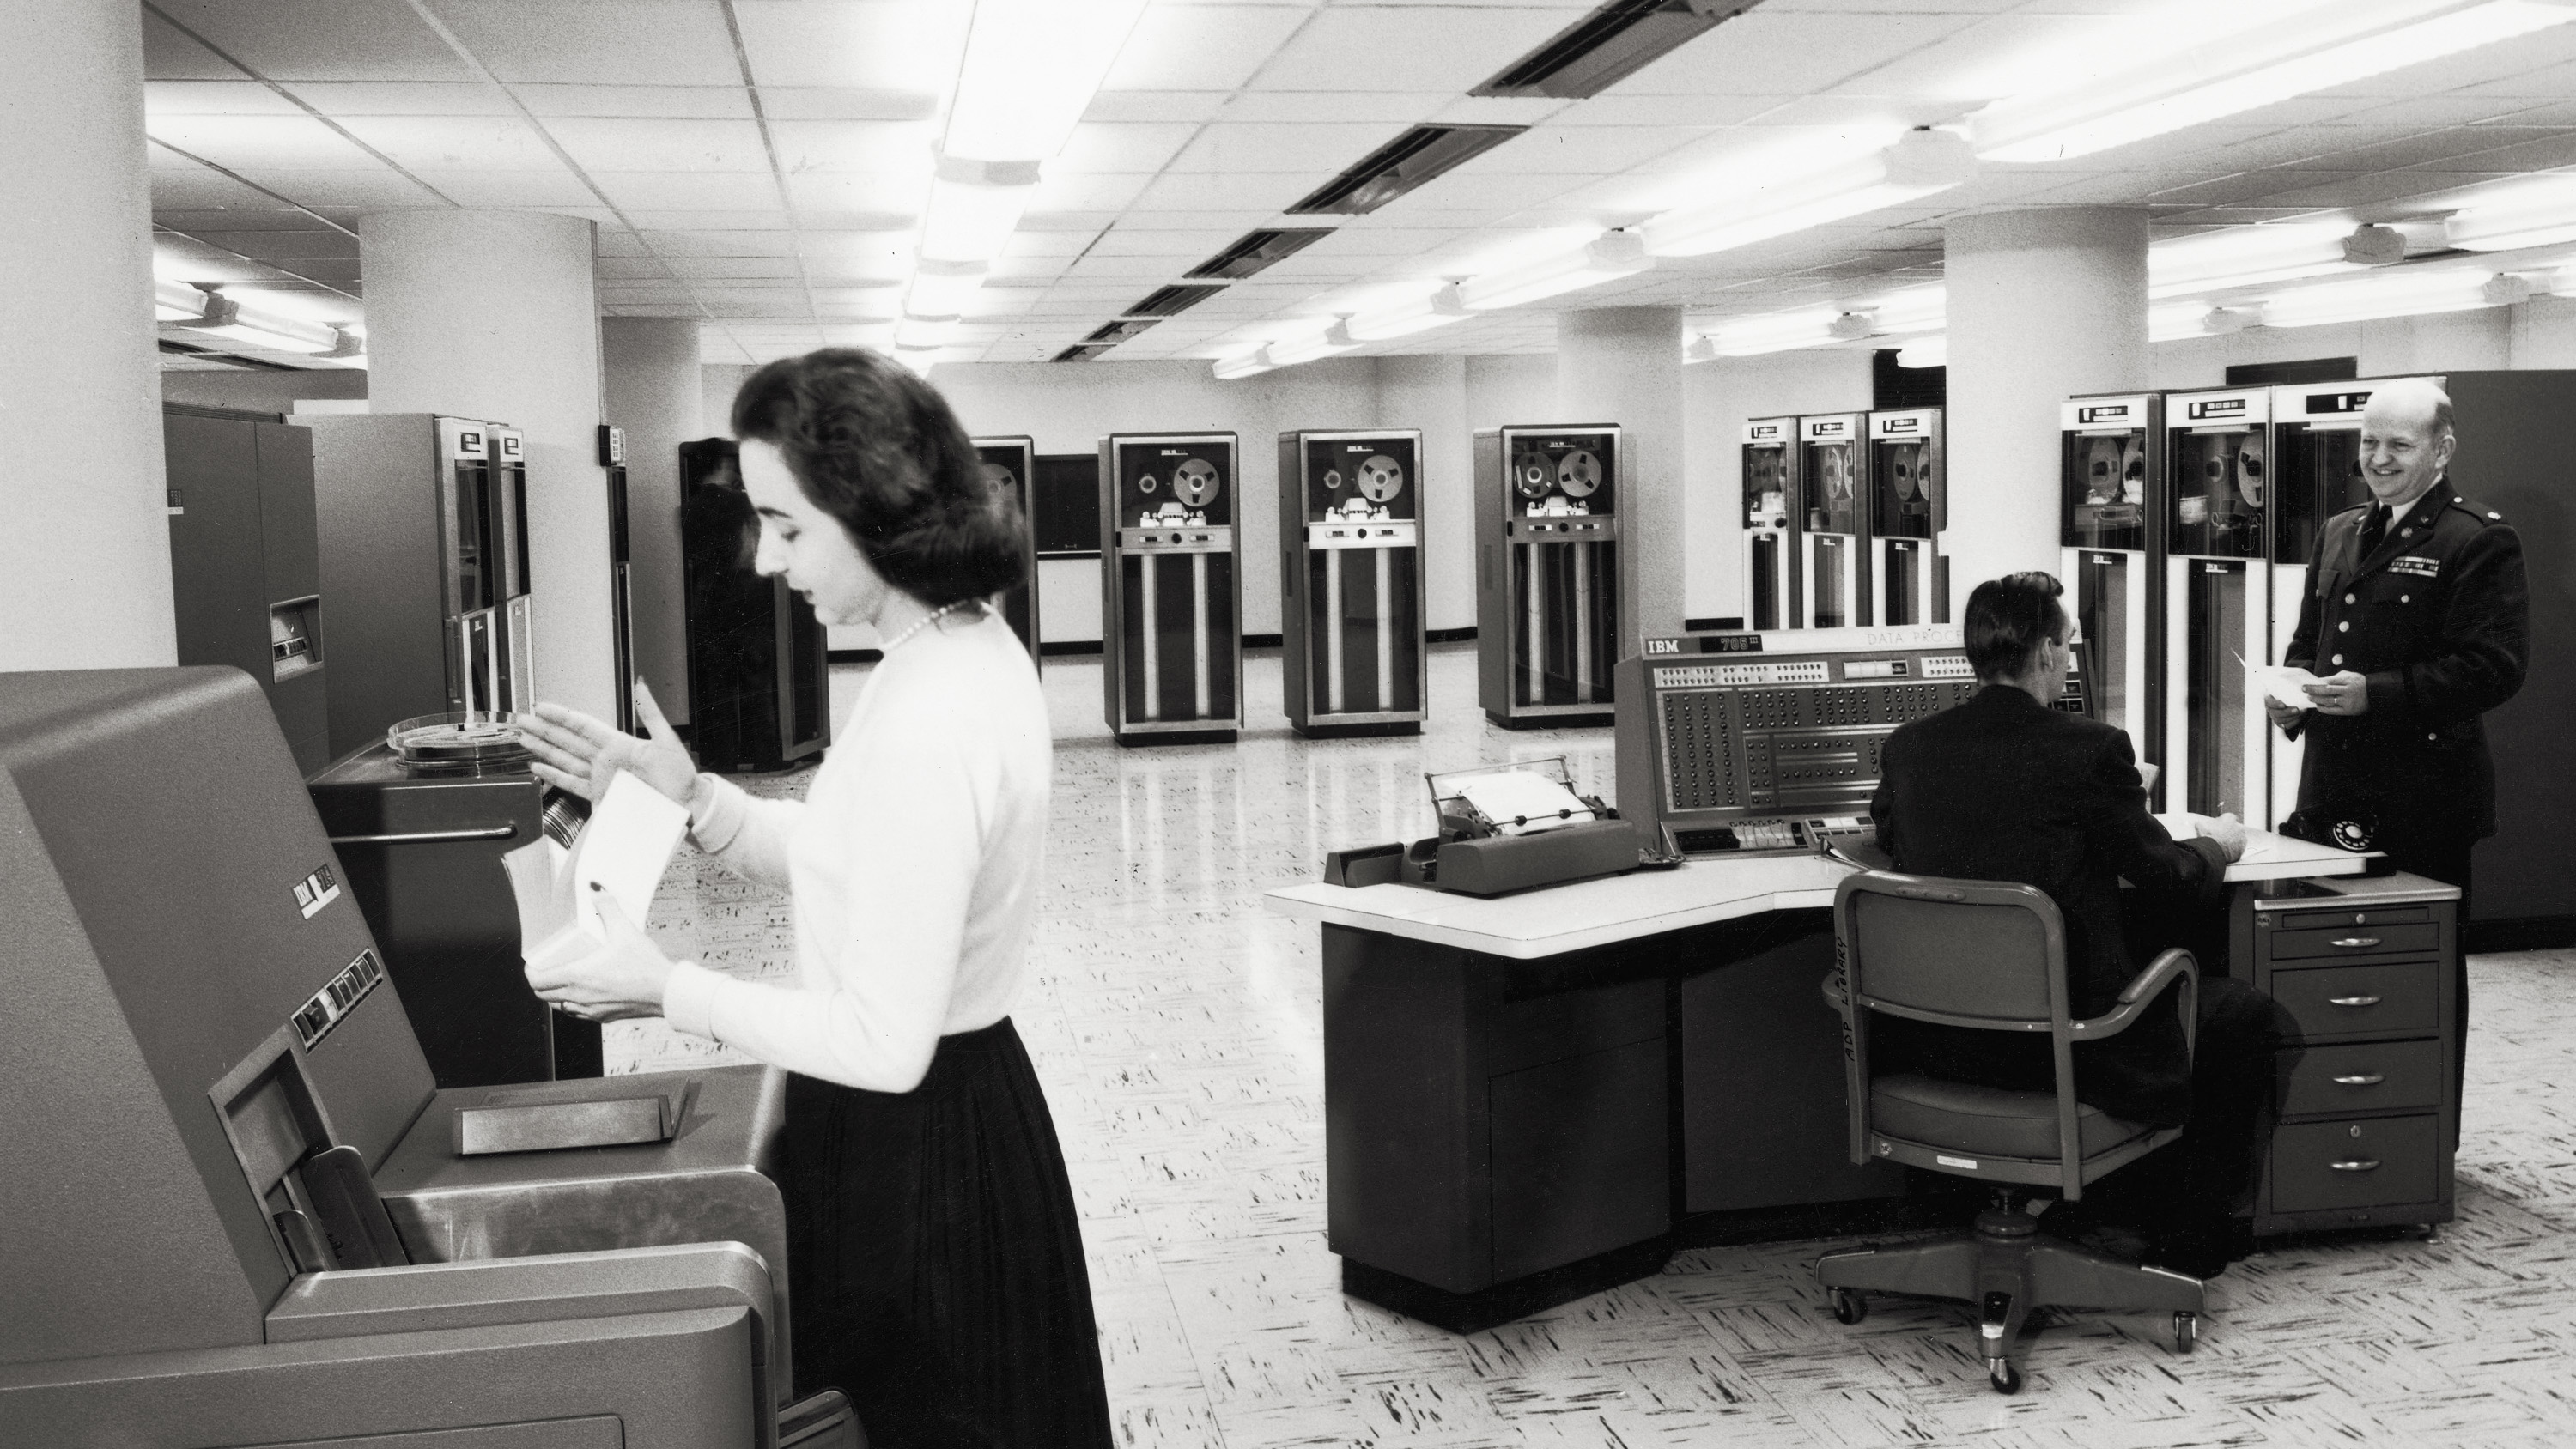 Arbeiterin im Vordergrund eines Raums mit Computern aus den 1950er Jahren